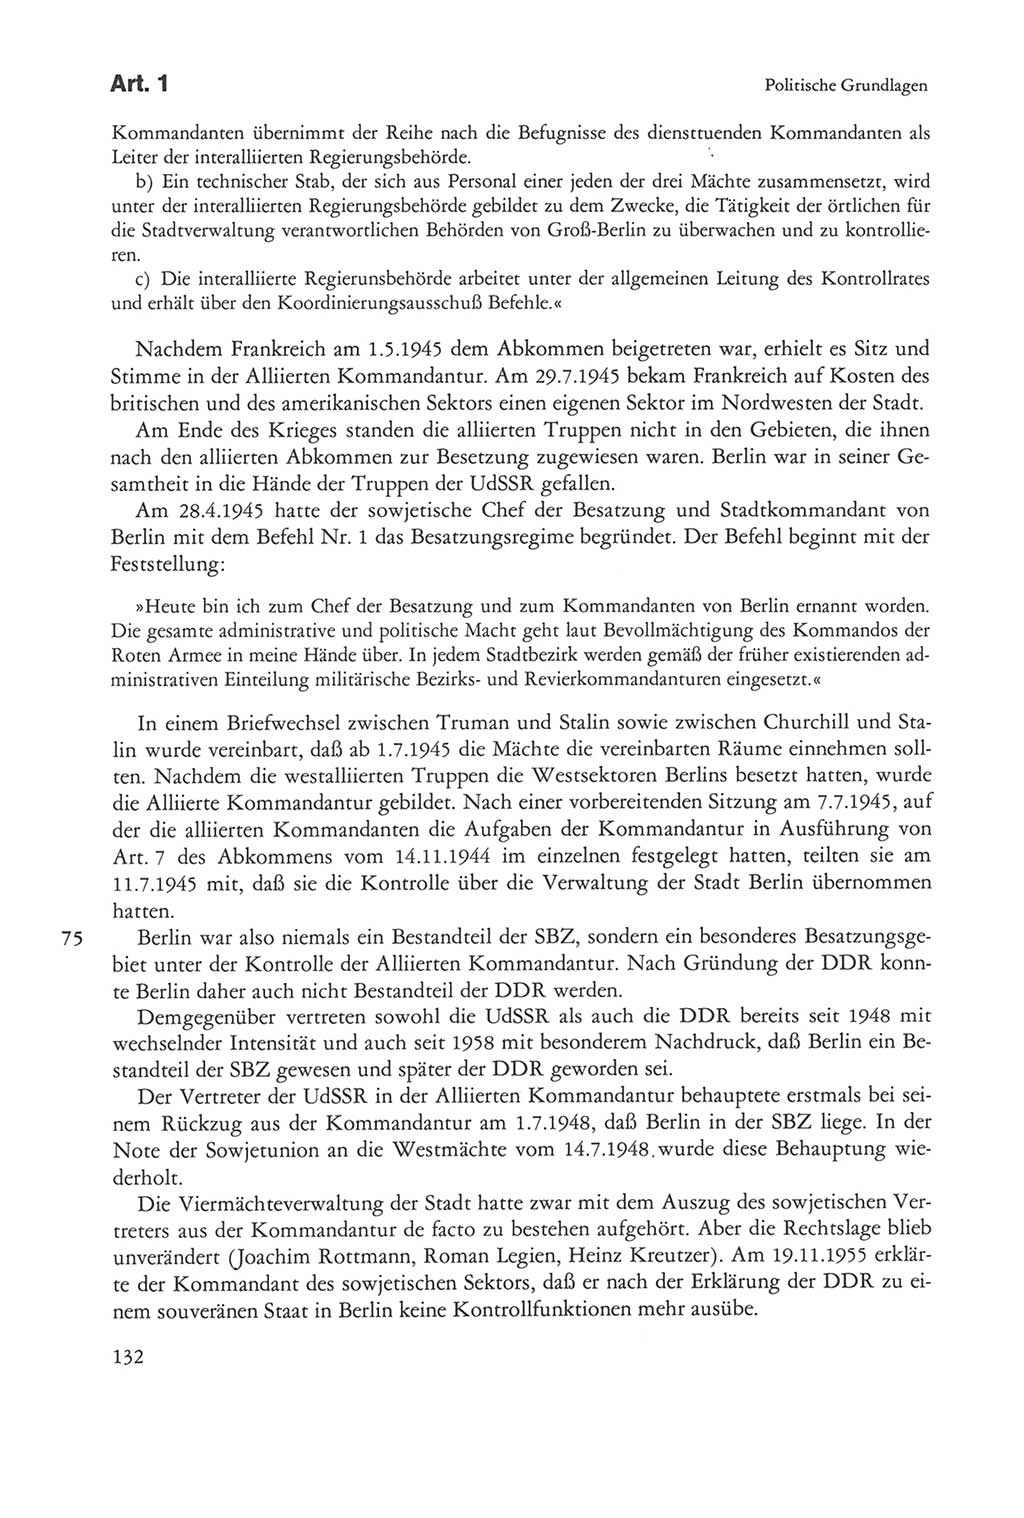 Die sozialistische Verfassung der Deutschen Demokratischen Republik (DDR), Kommentar mit einem Nachtrag 1997, Seite 132 (Soz. Verf. DDR Komm. Nachtr. 1997, S. 132)